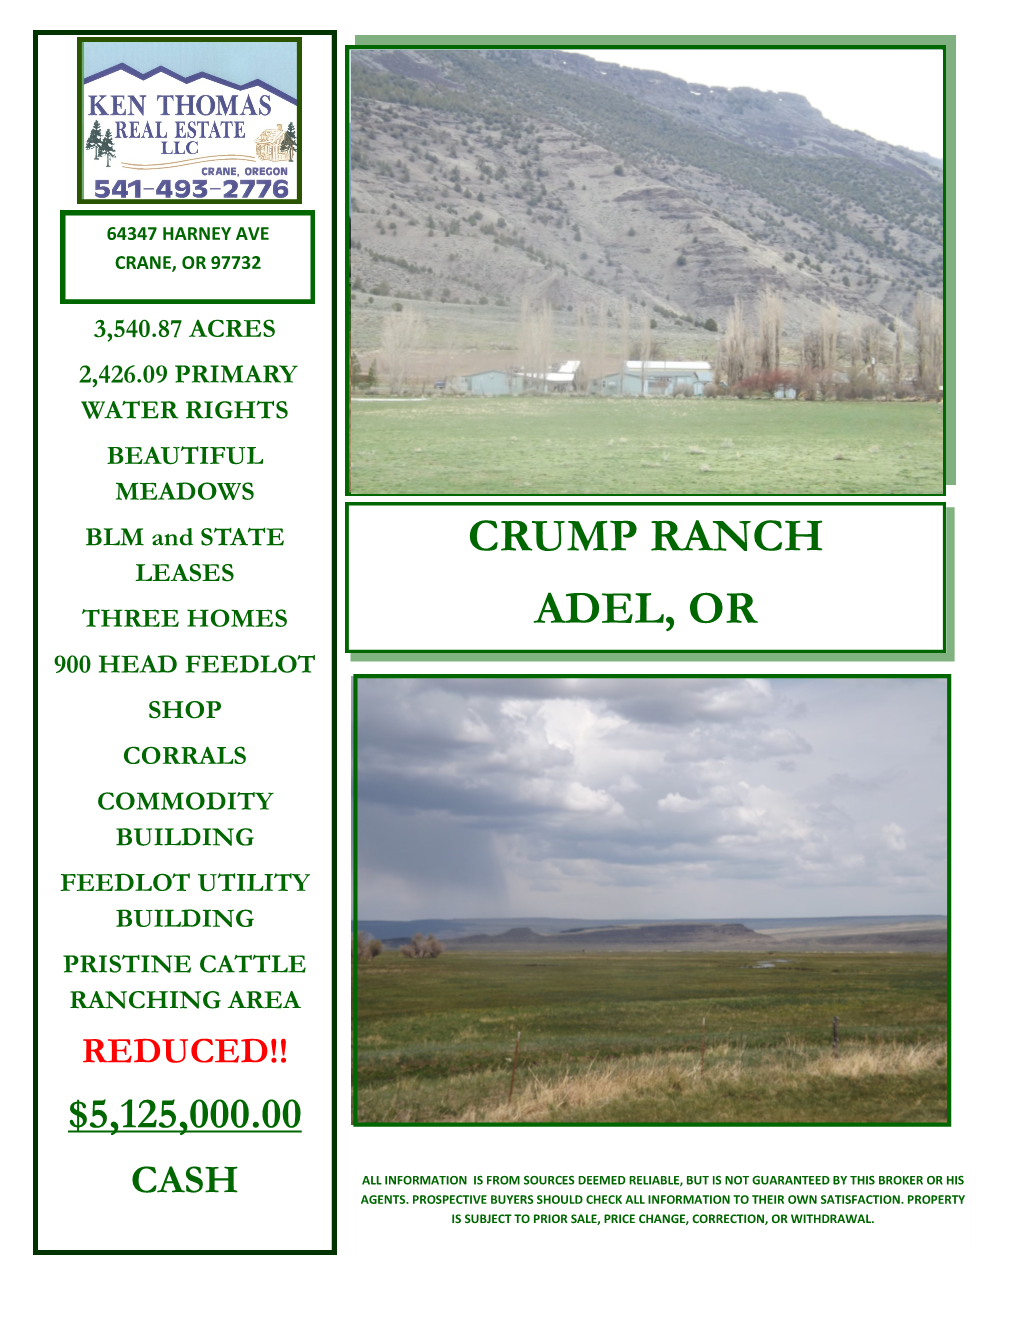 Crump Ranch Adel, Or